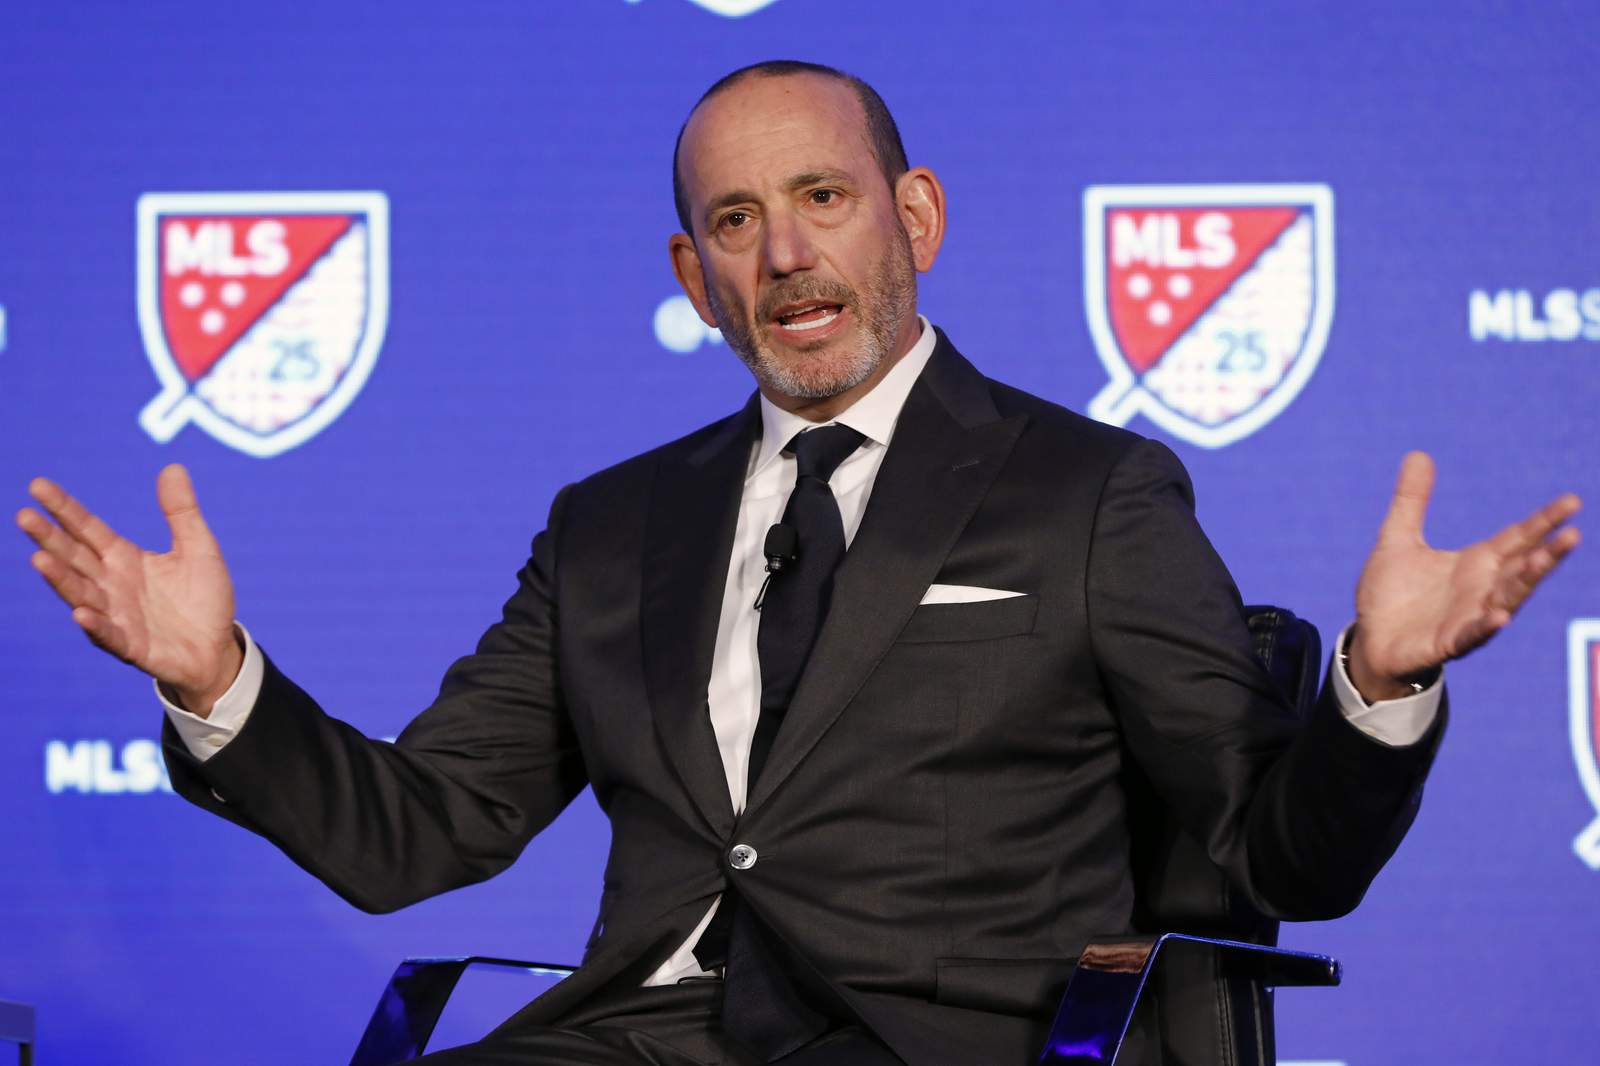 Garber recounts MLS successes, but acknowledges losses